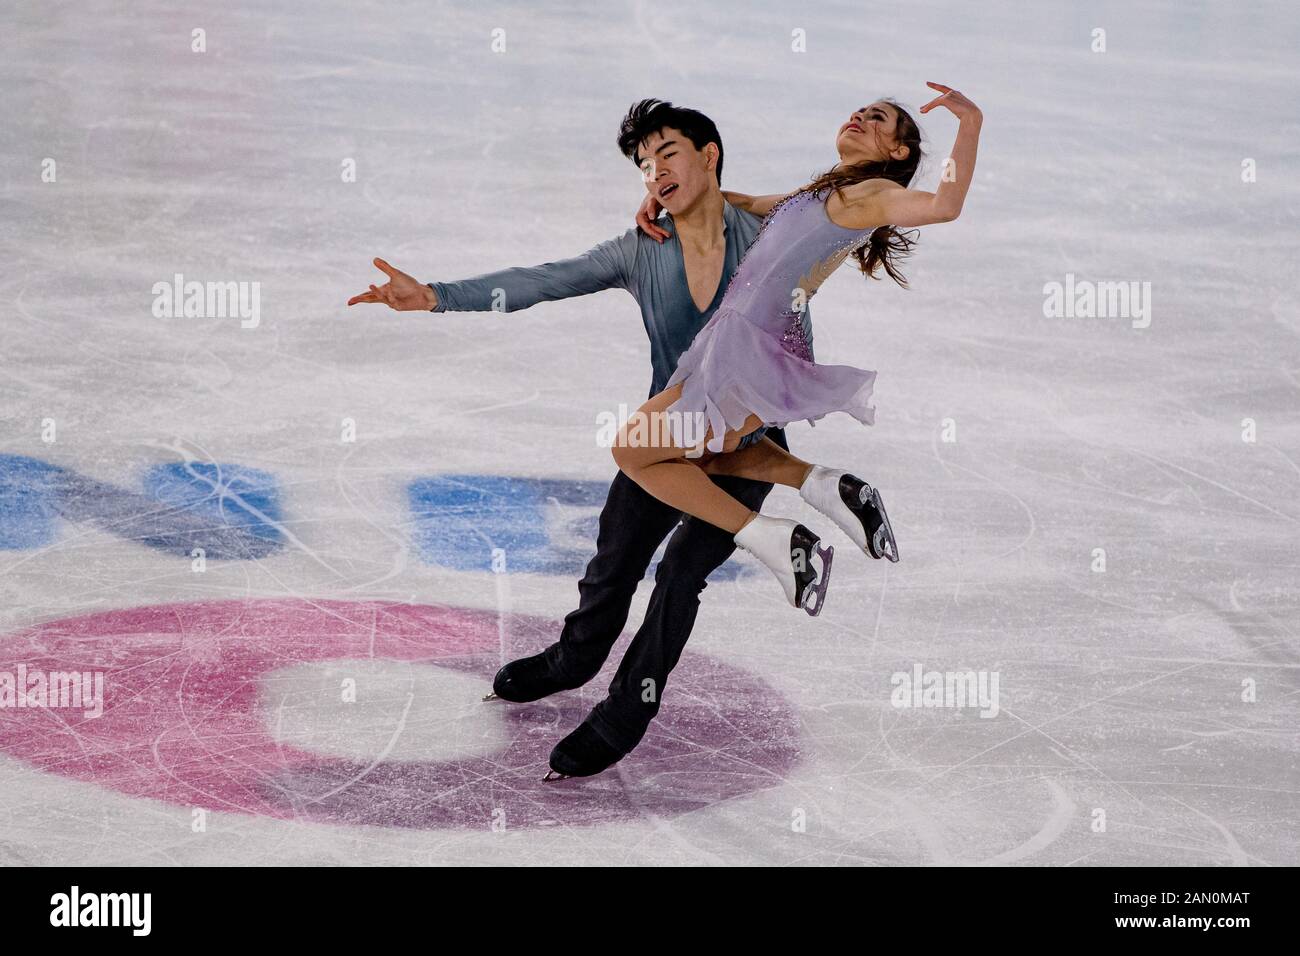 SUIZA. 15 enero de 2020 WOLFKOSTIN Katarina / CHEN Jeffrey - Determinación de equipo (EE.UU.) competir en la figura Skating -Equipo mixto de NOC patinaje sobre hielo durante los Juegos